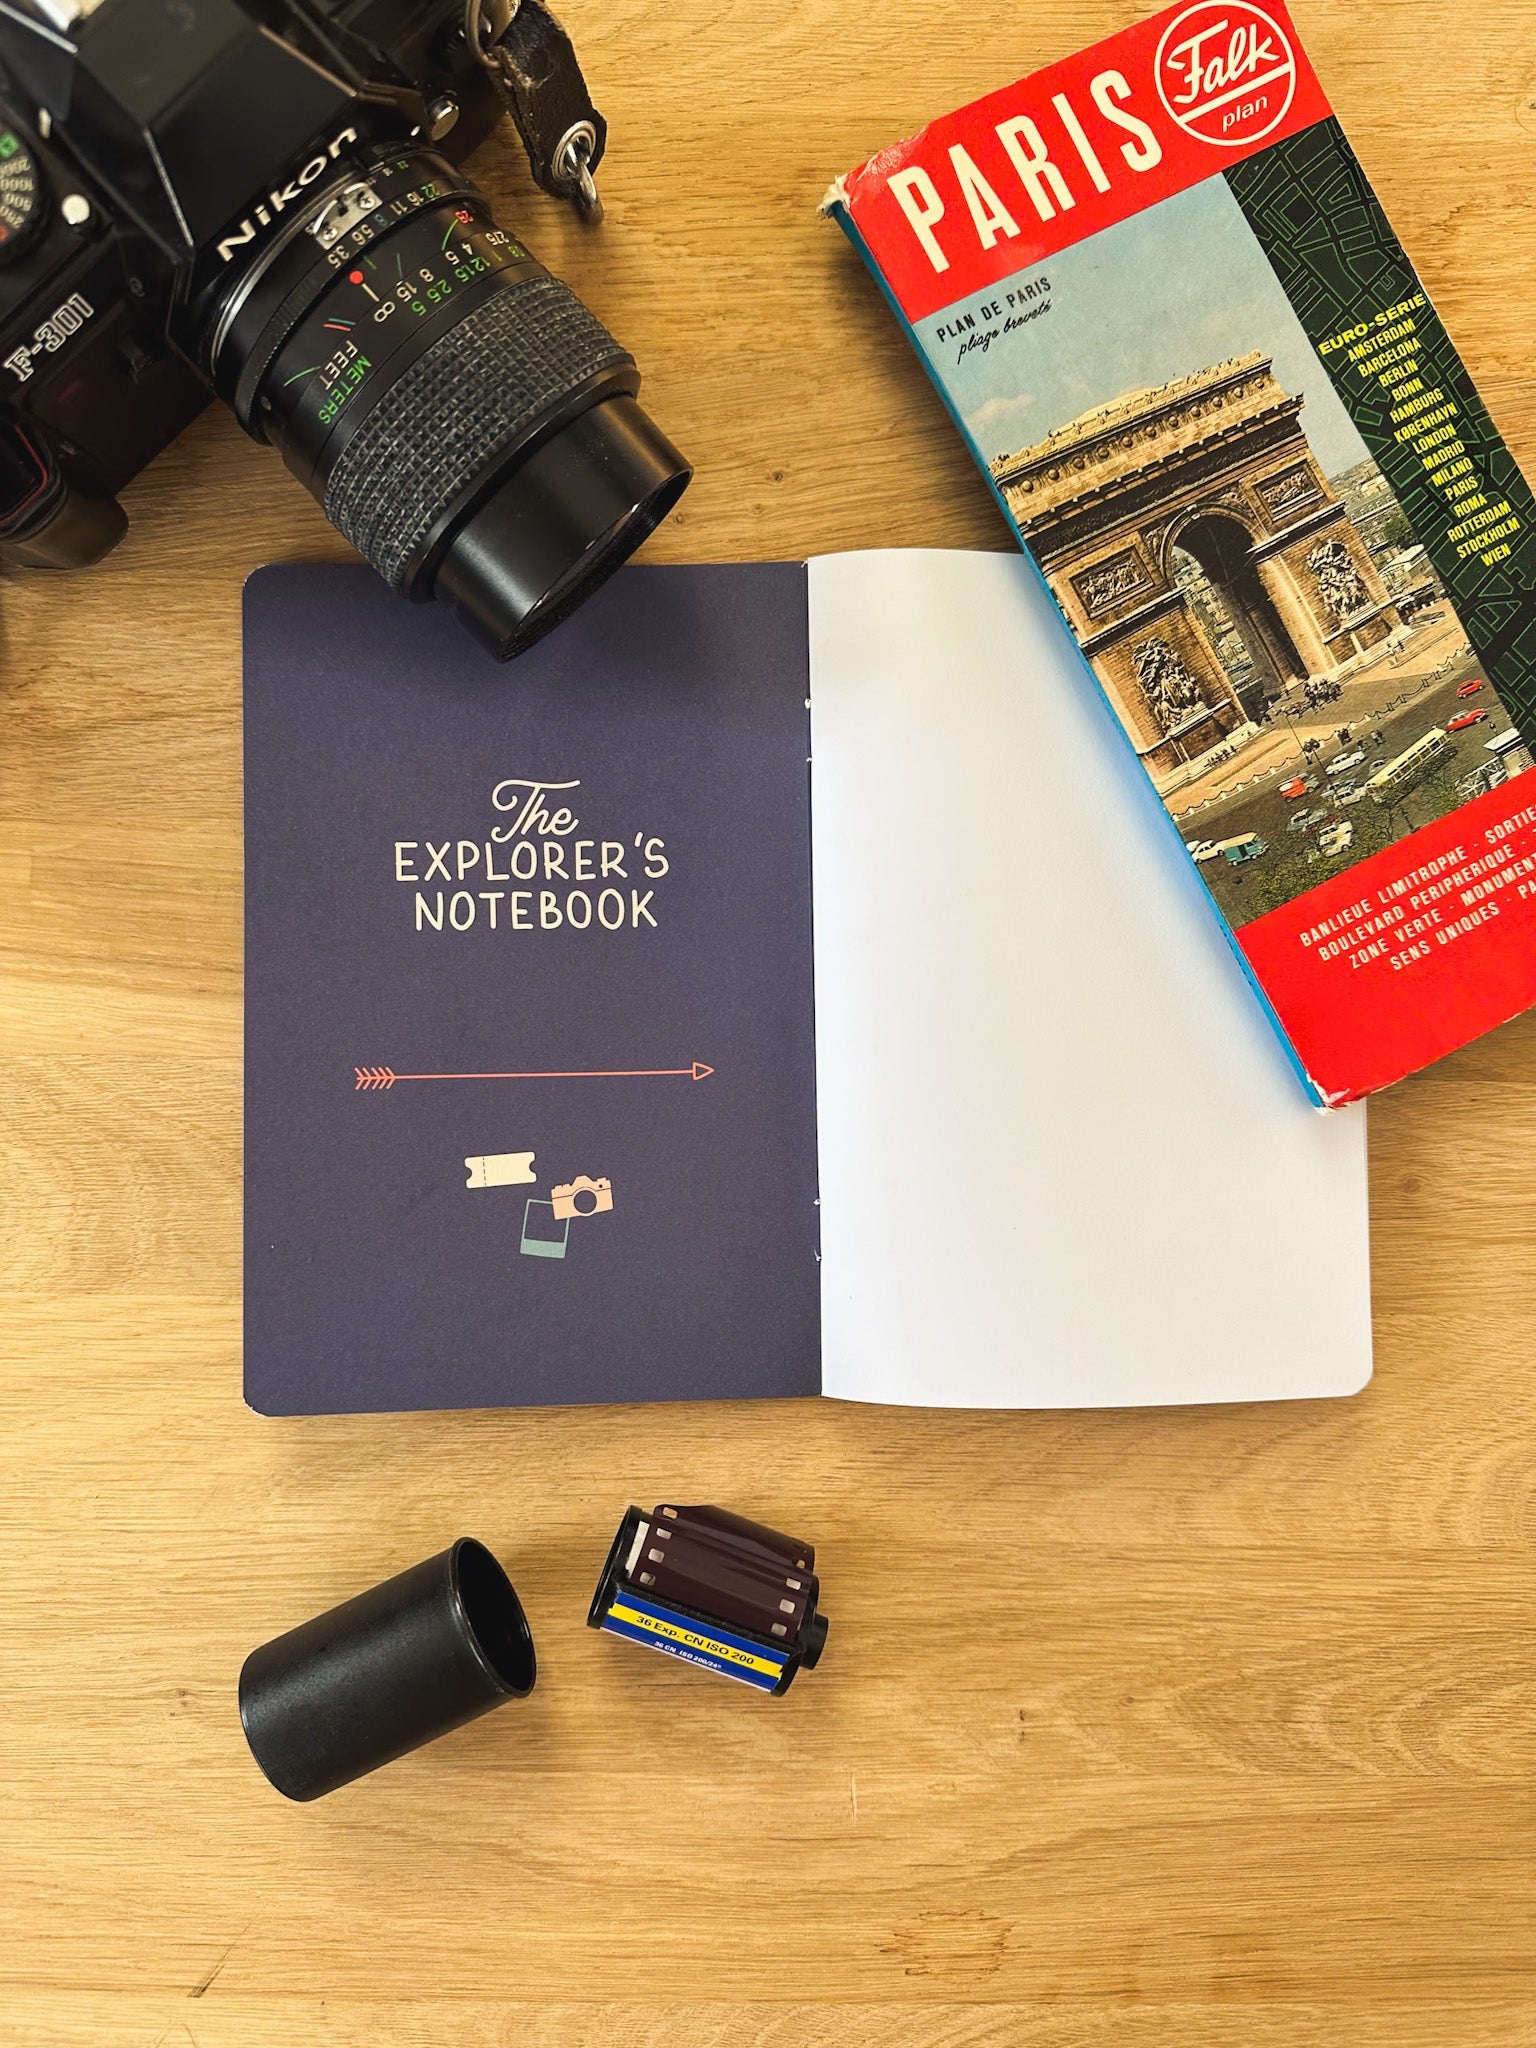 Reisetagebuch The Explorers Notebook Band 4 Stadtbummel Erste Seite mit alter Kamera daneben und Illustrationen  und einem Stadtplan von Paris